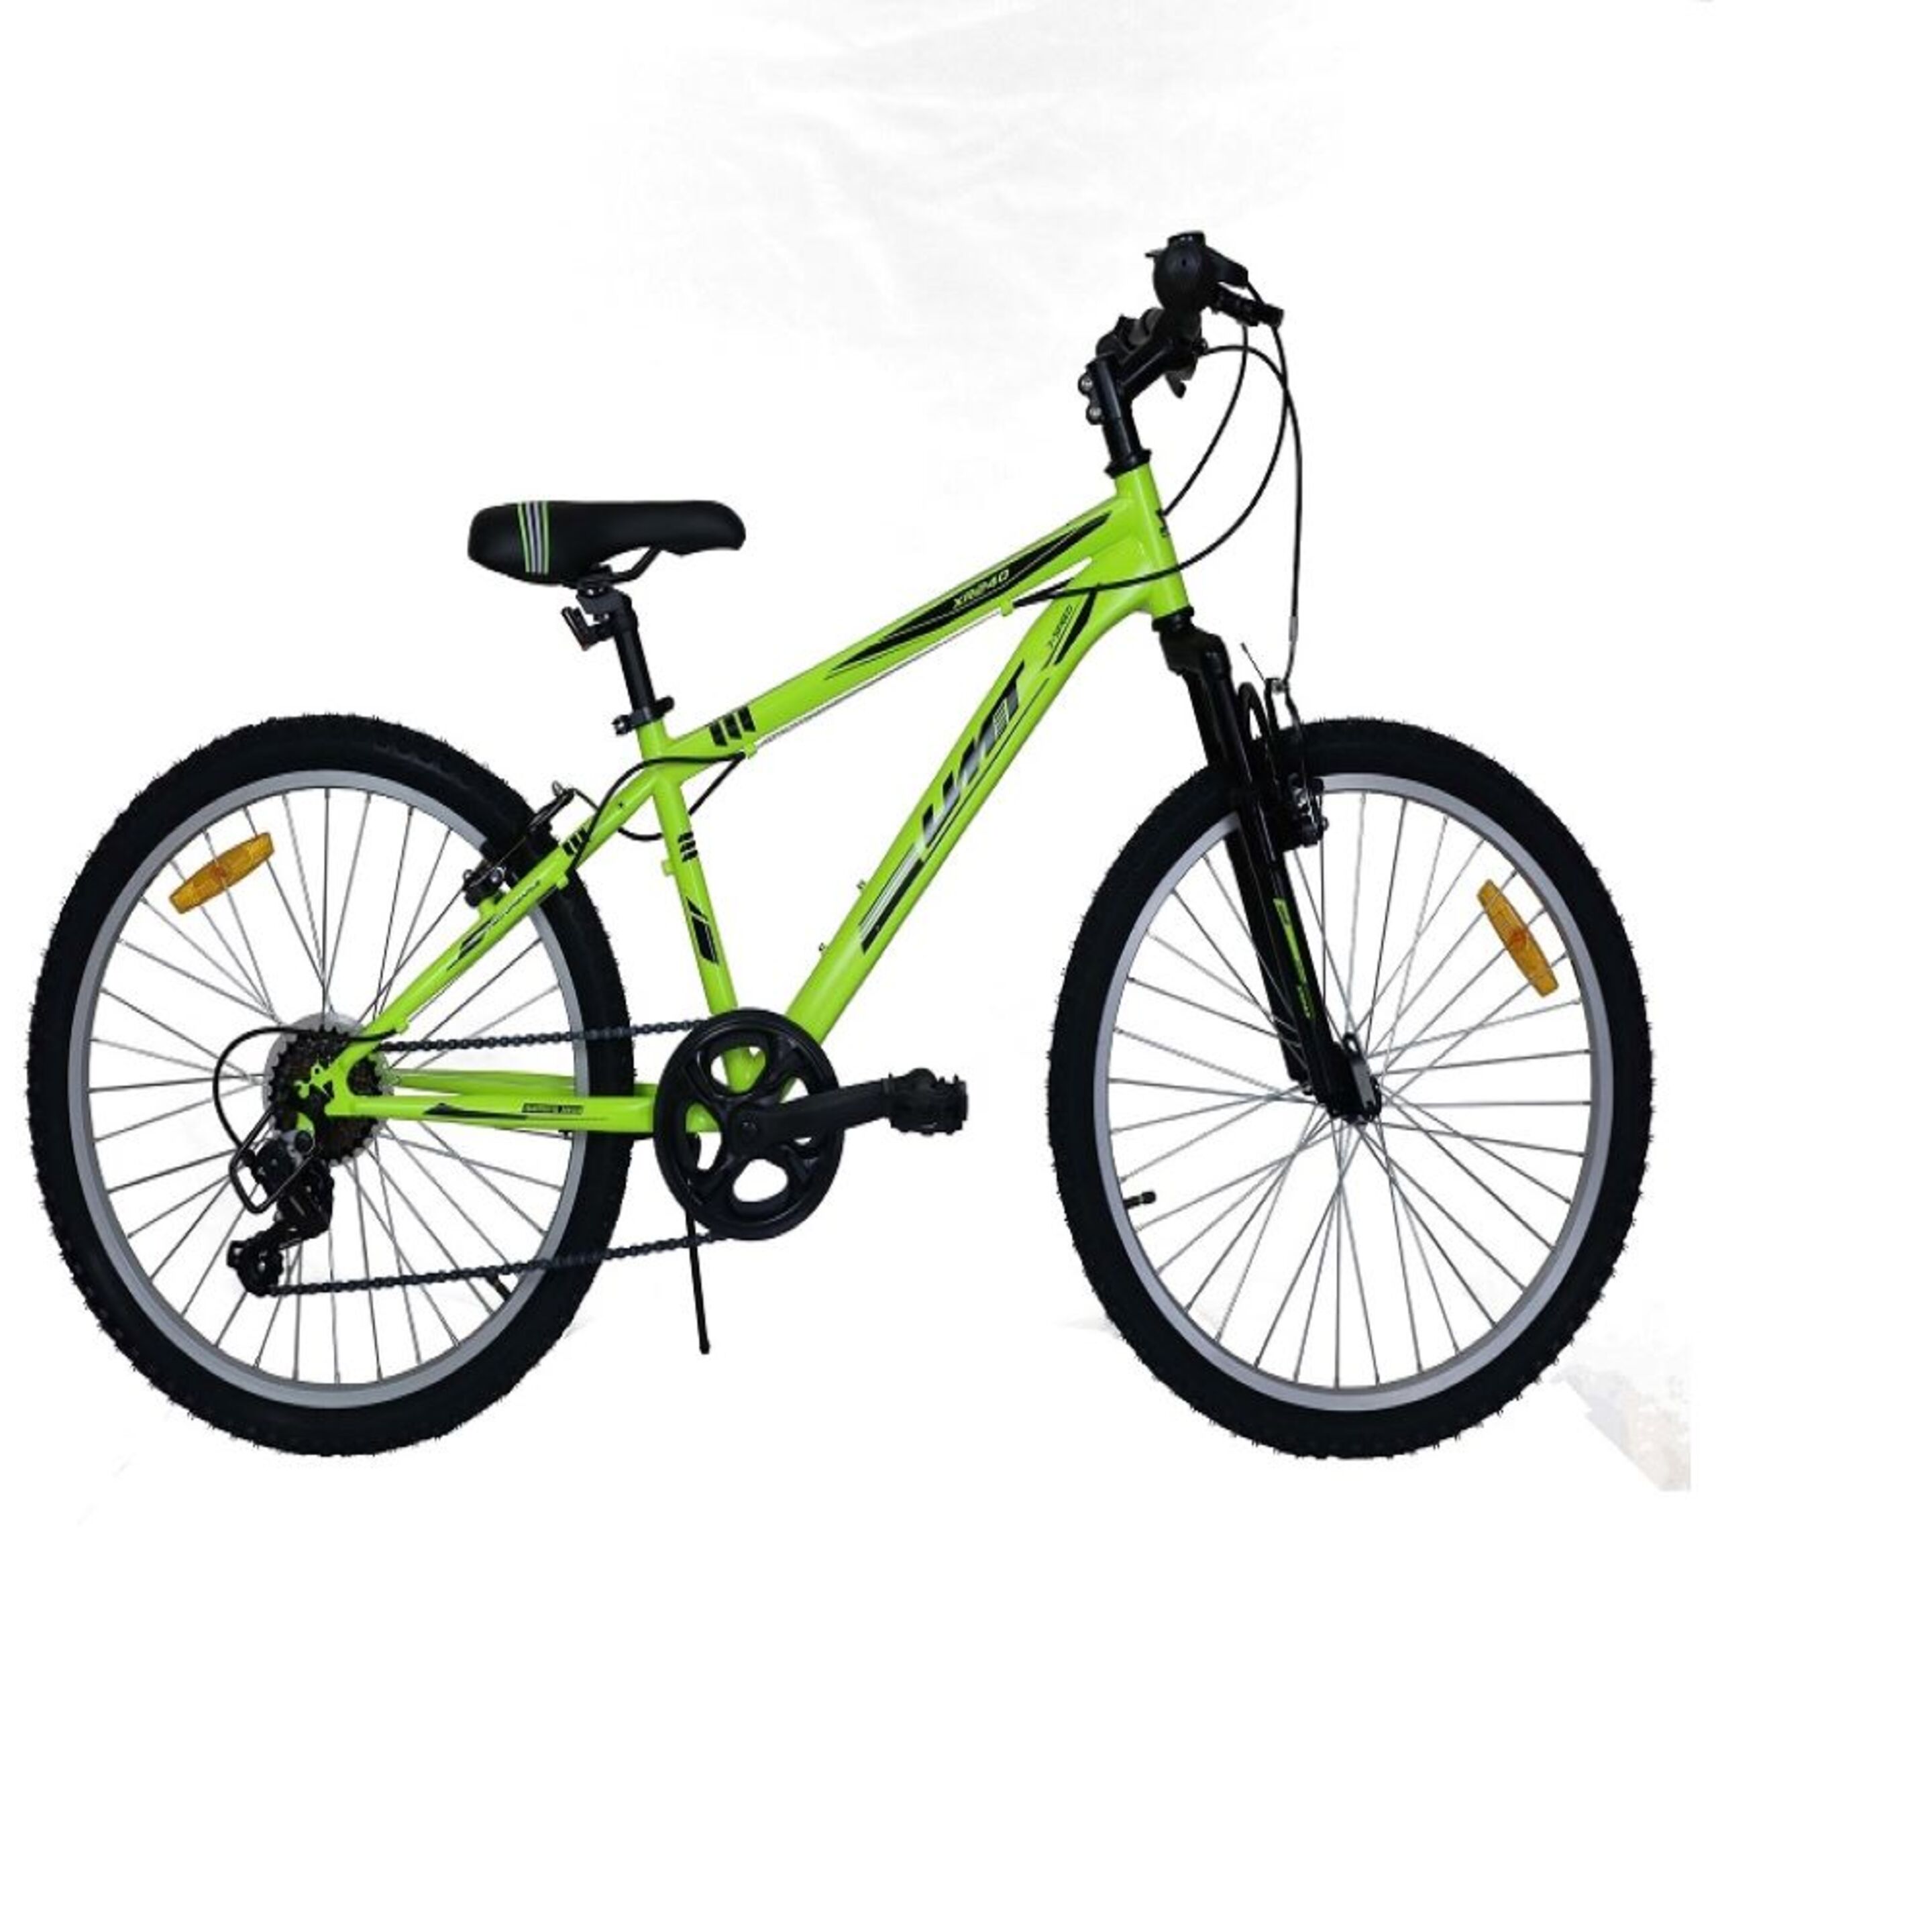 Umit 24" Xr-240 Mountain Bike Verde Pistache